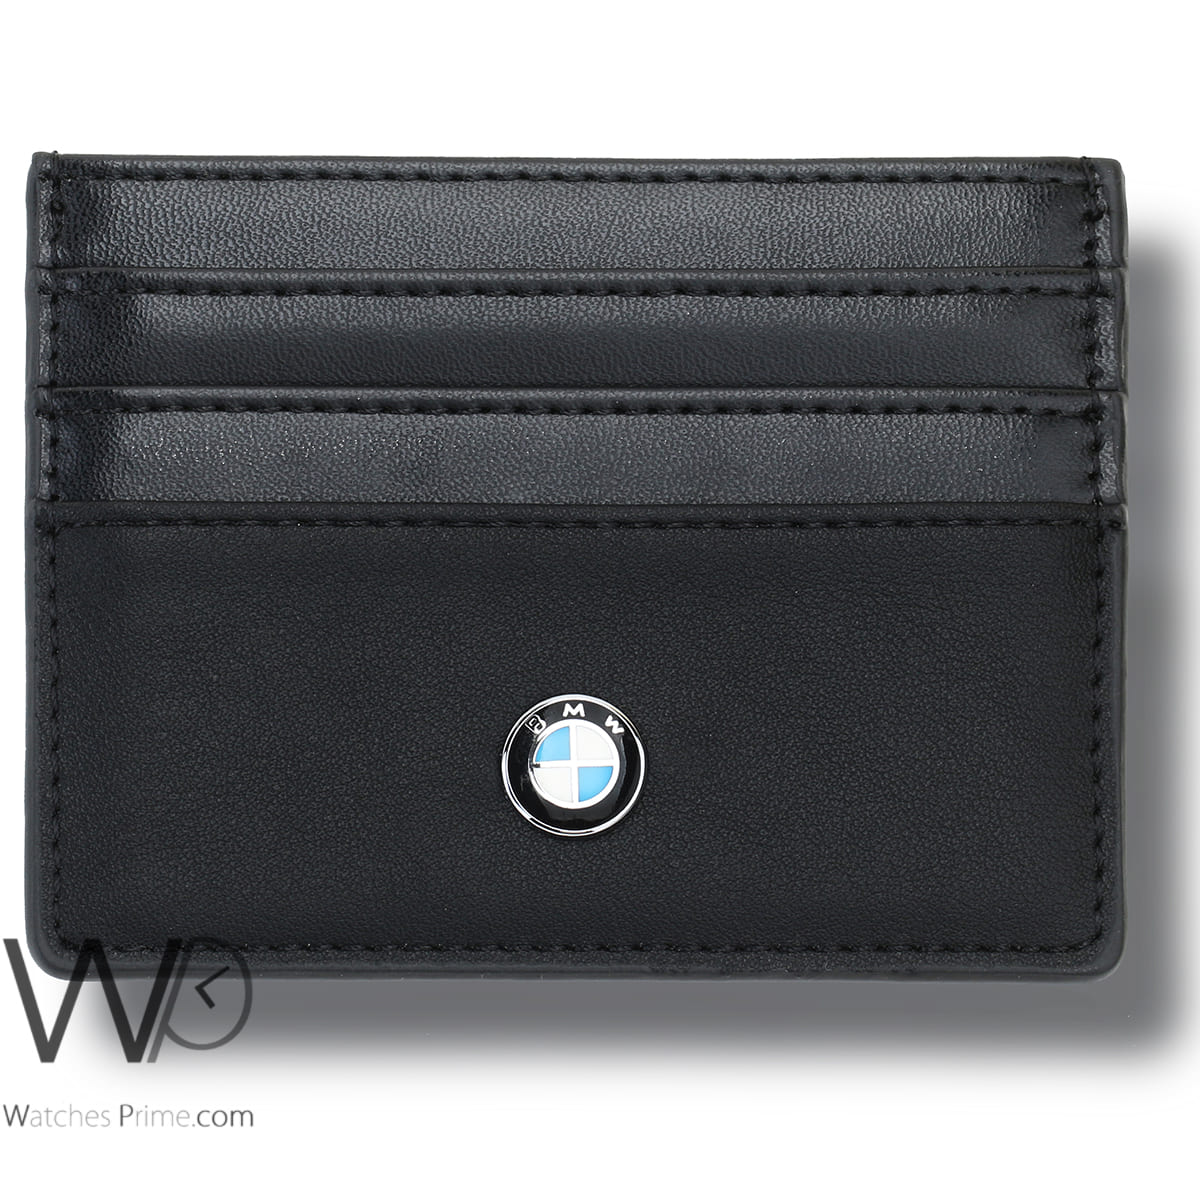 bmw-card-holder-black-leather